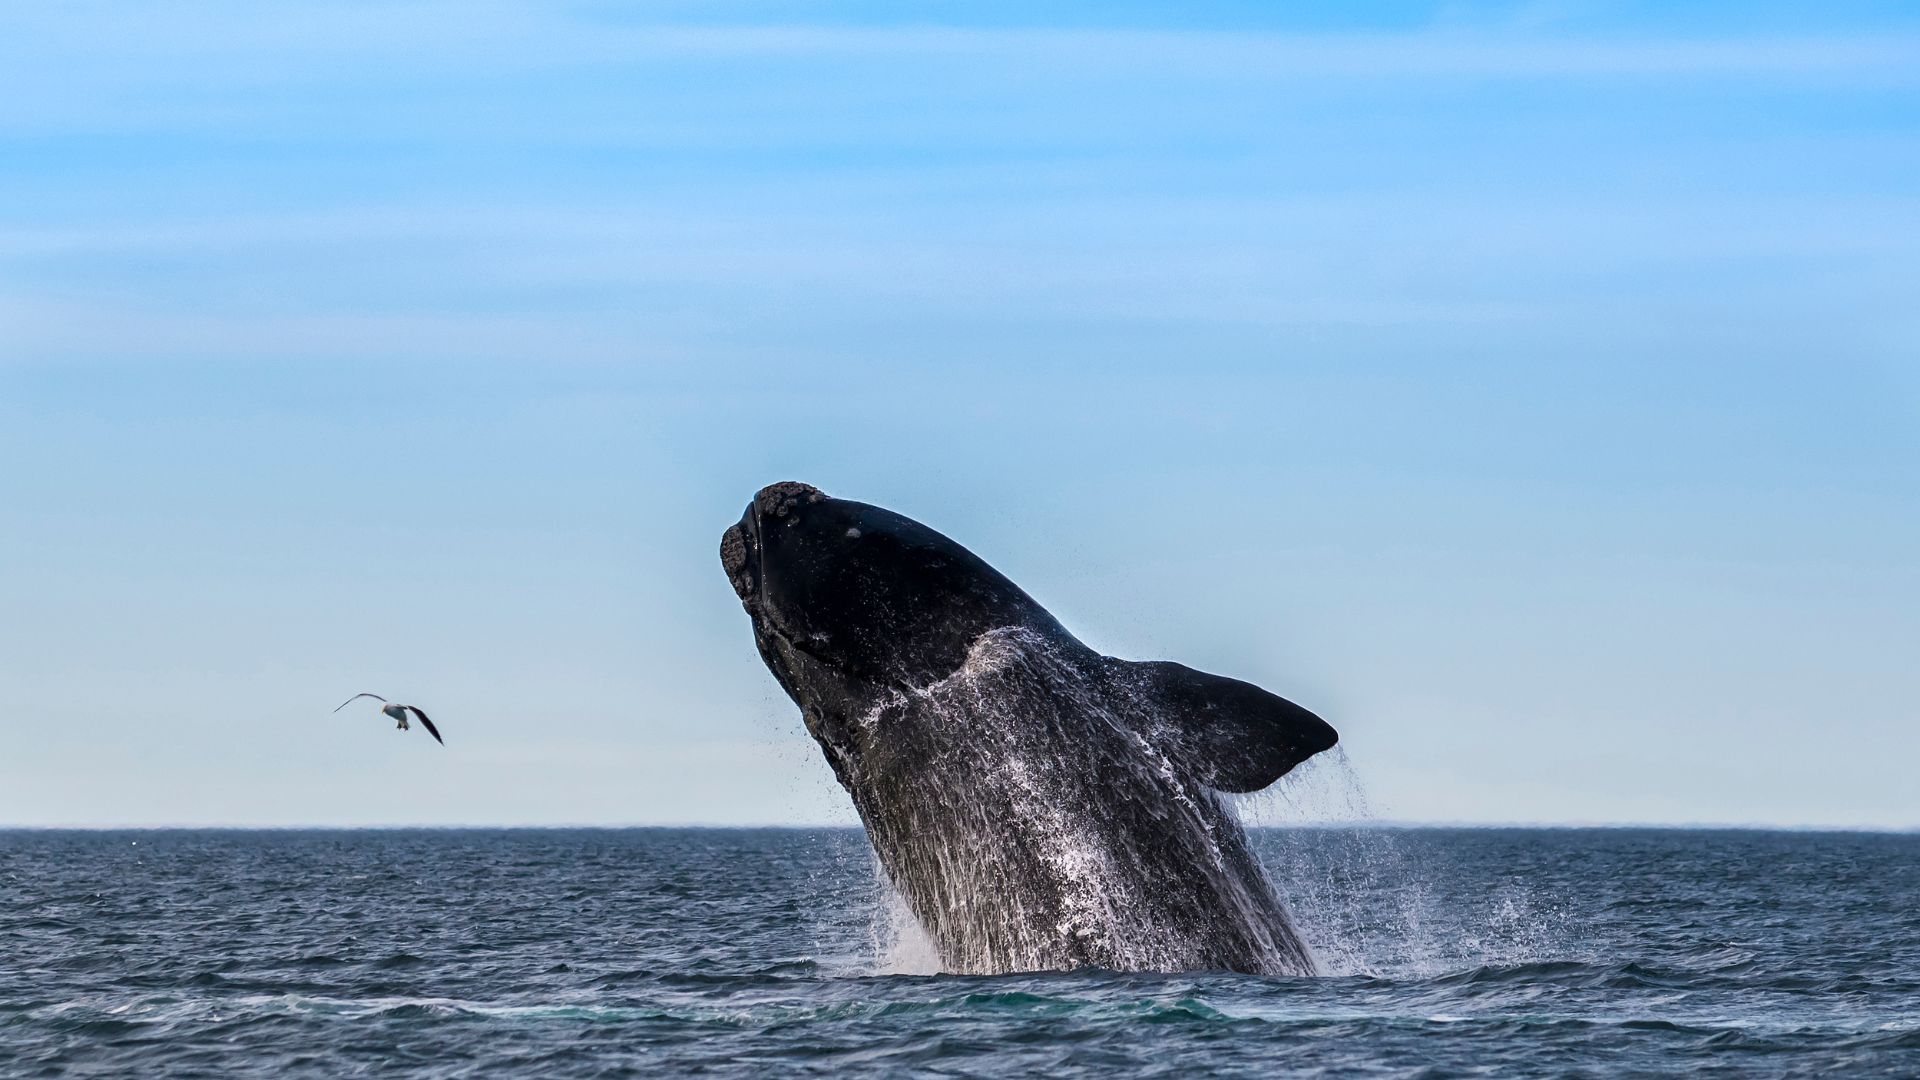 Baleias visitam O Mar Grosso